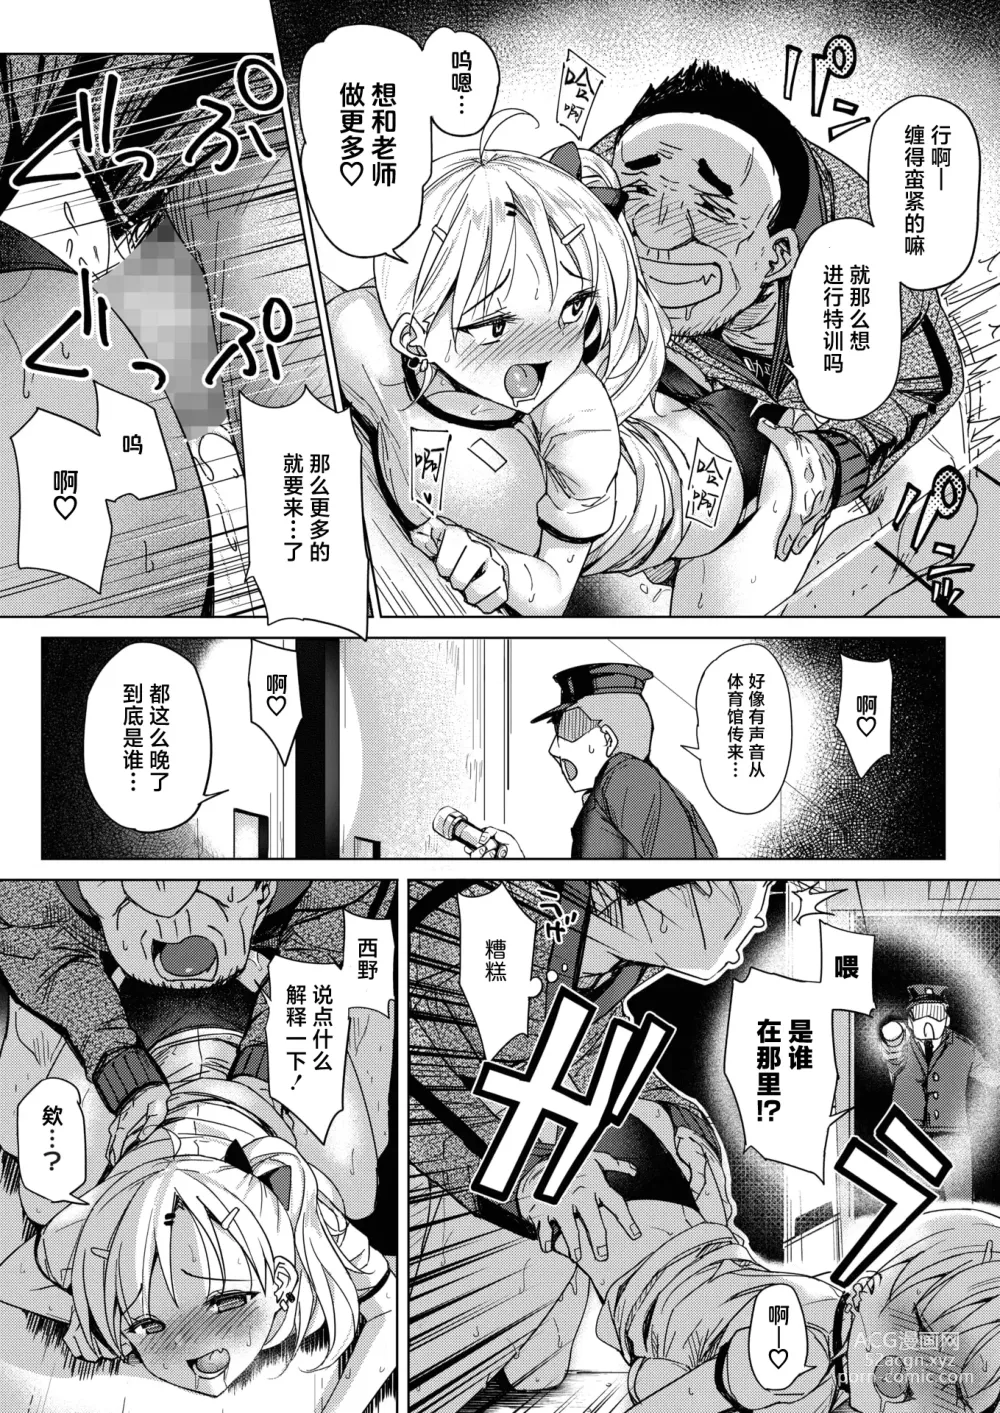 Page 9 of manga Tobi Pako to Tokkun shitai